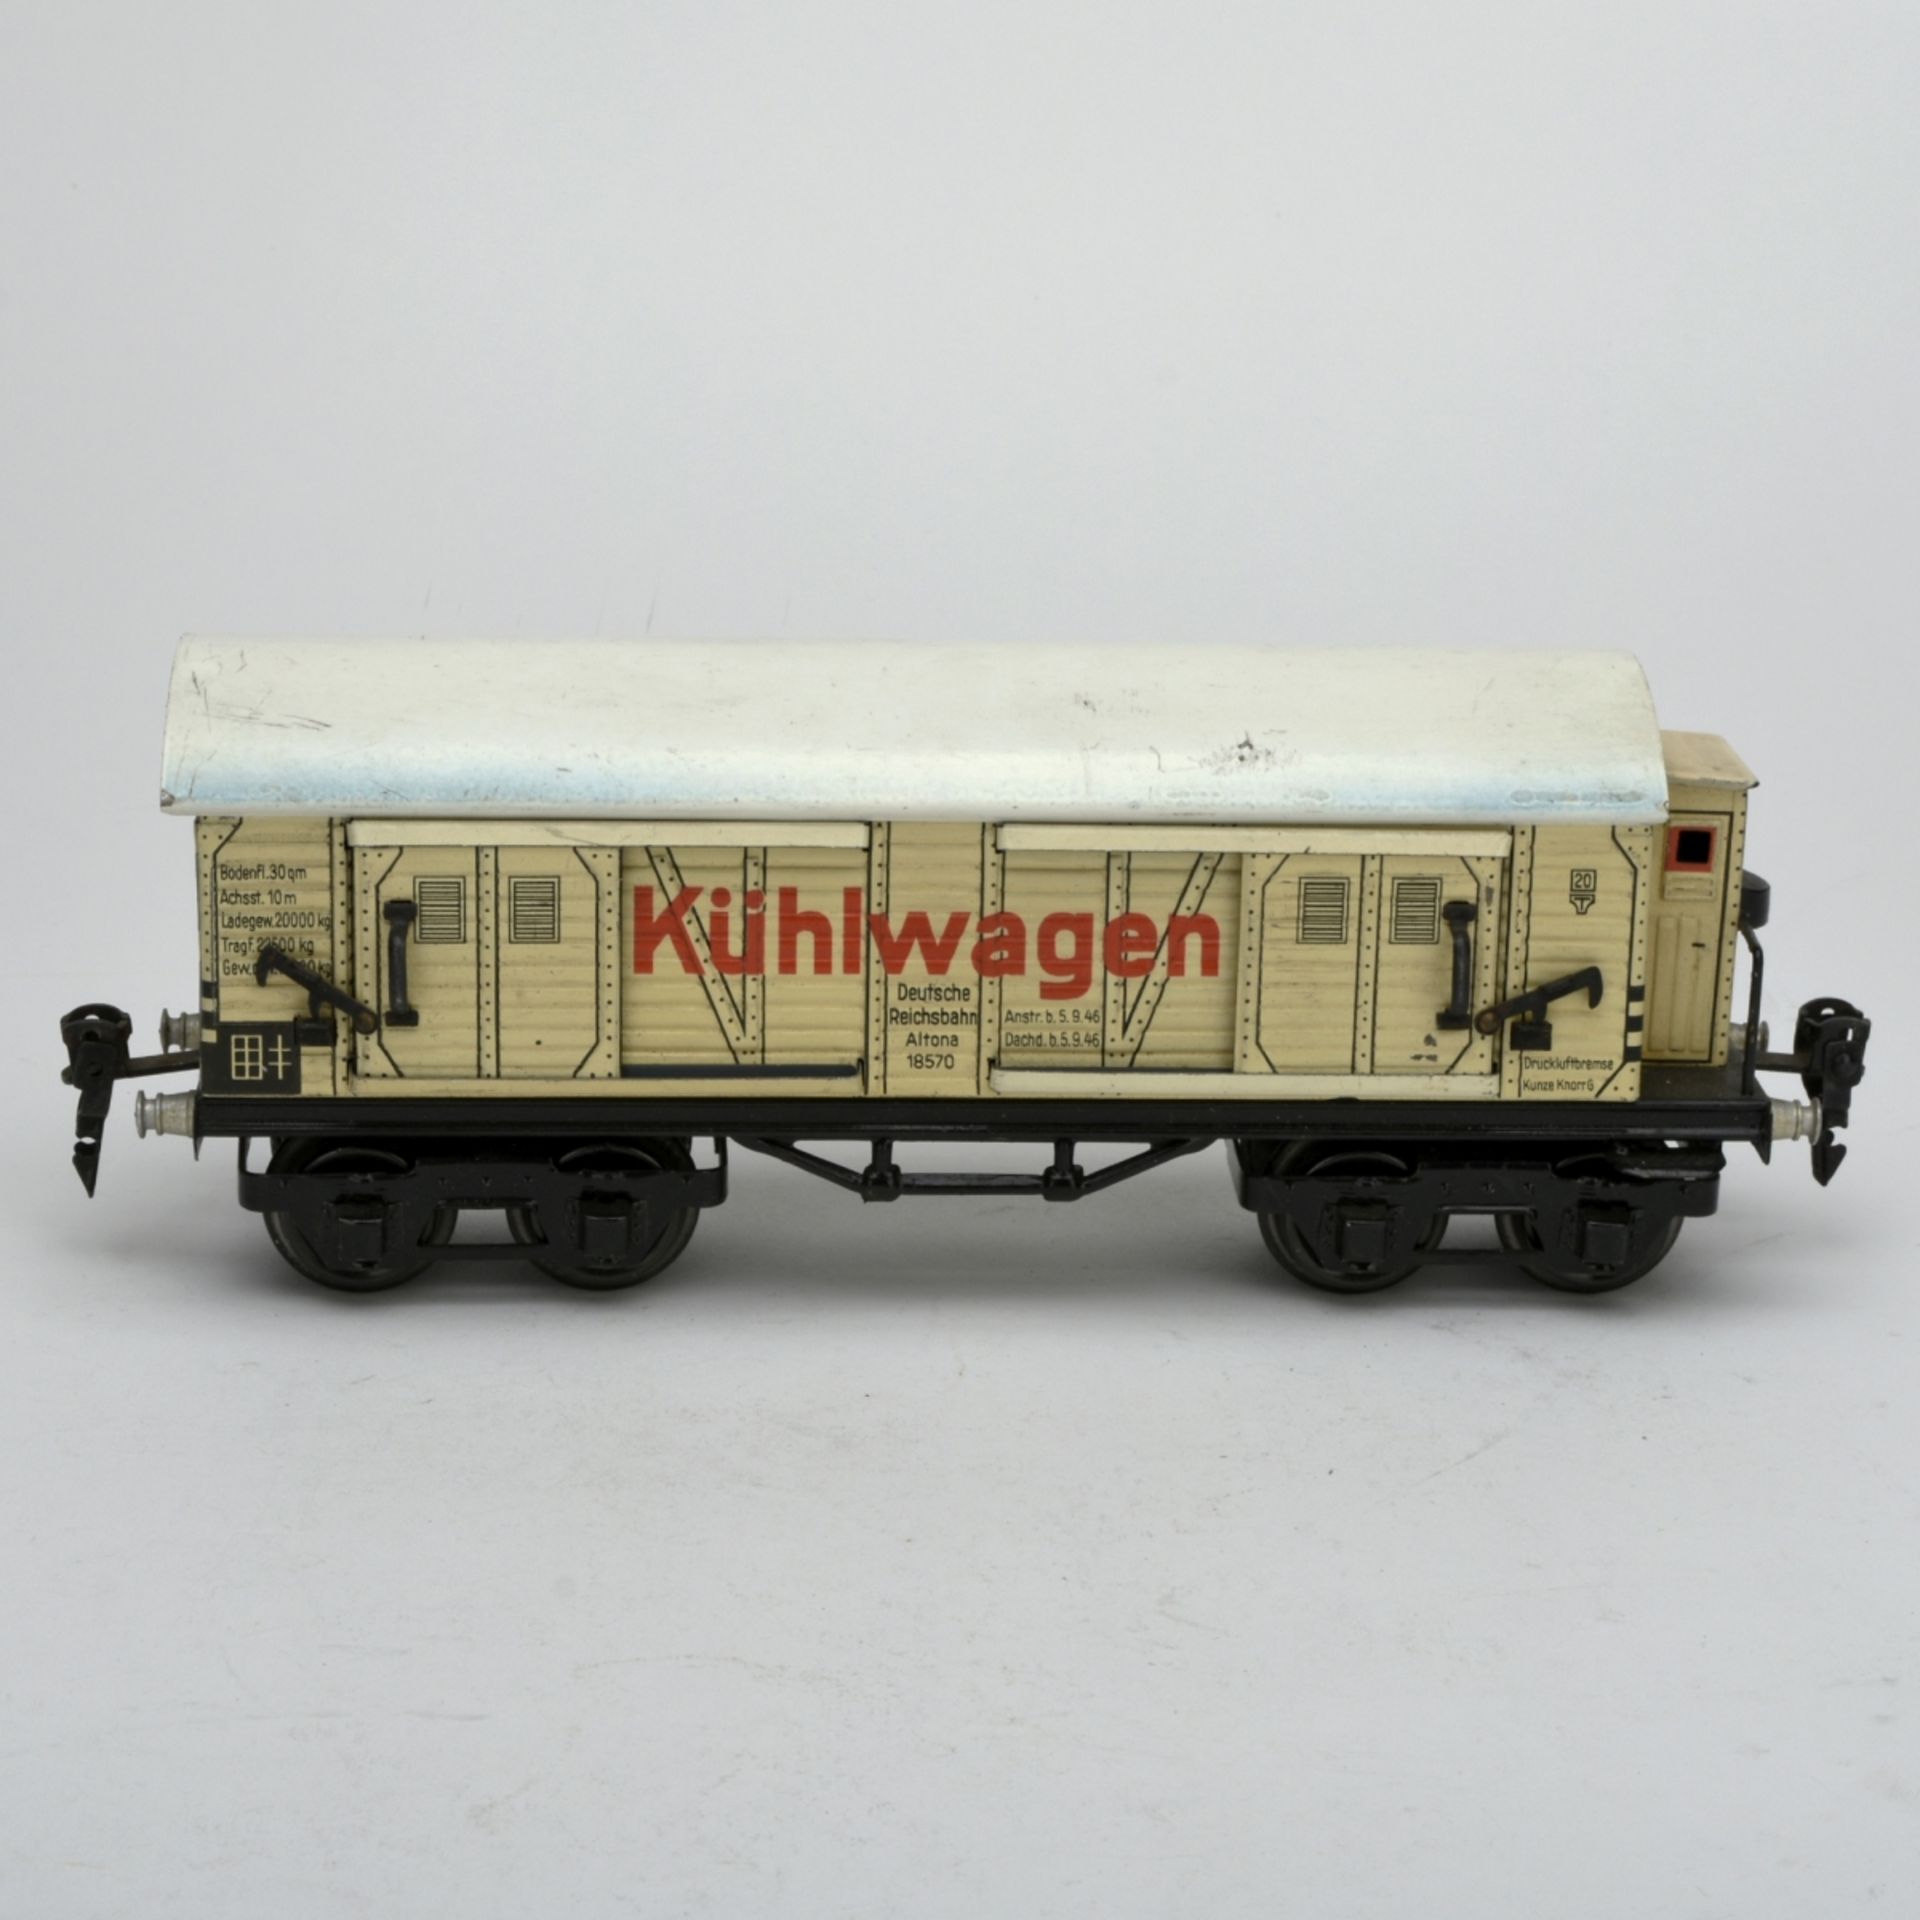 Kühlwagen - Image 2 of 5